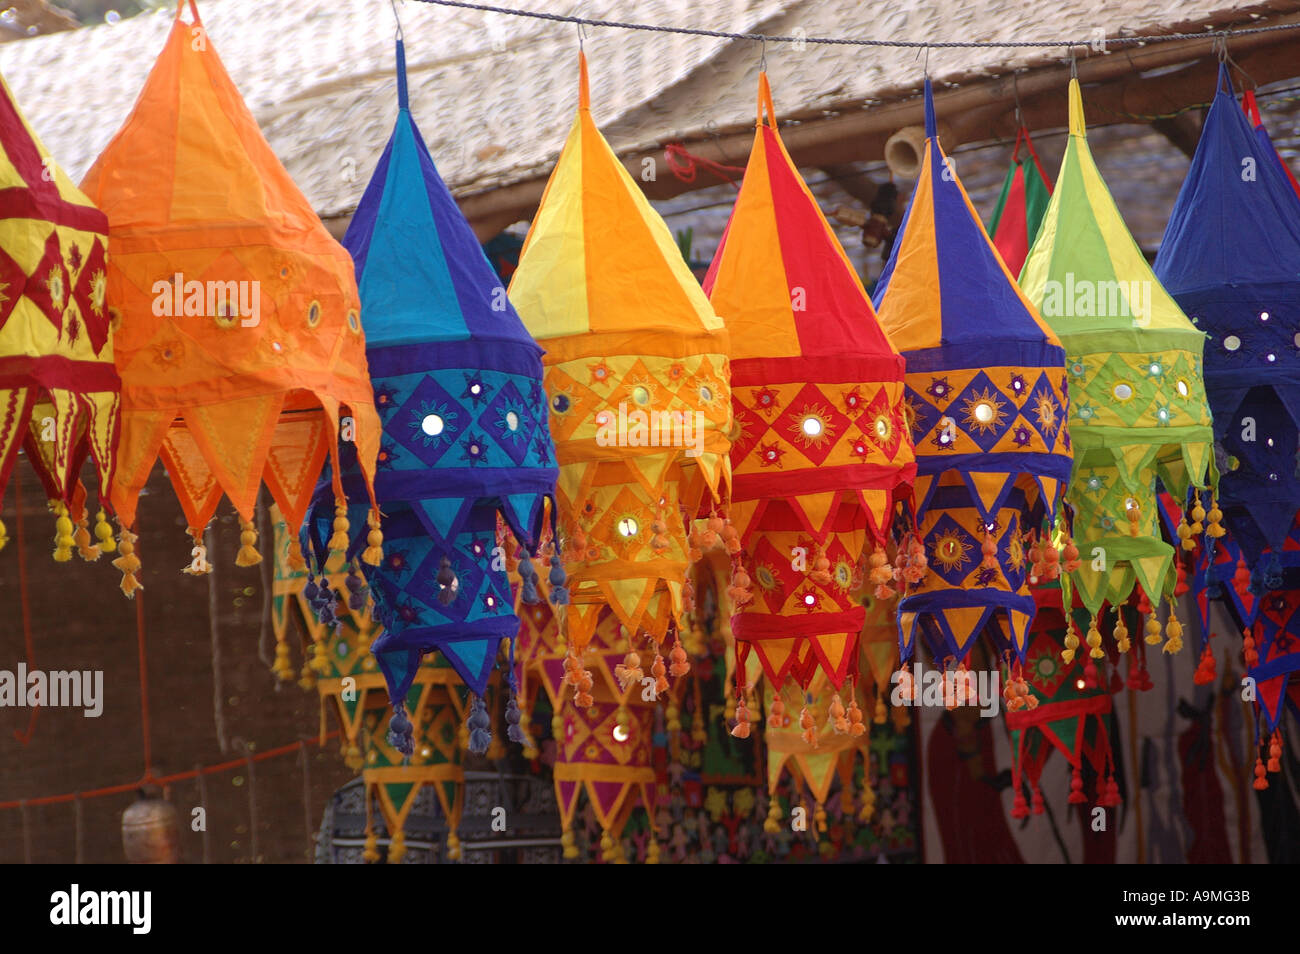 ANG99427 Stoff Lampe Farbtöne Farben Formen Spiegel arbeiten auf  Lampenschirme Chandeliar hängenden Orissa, Indien Stockfotografie - Alamy